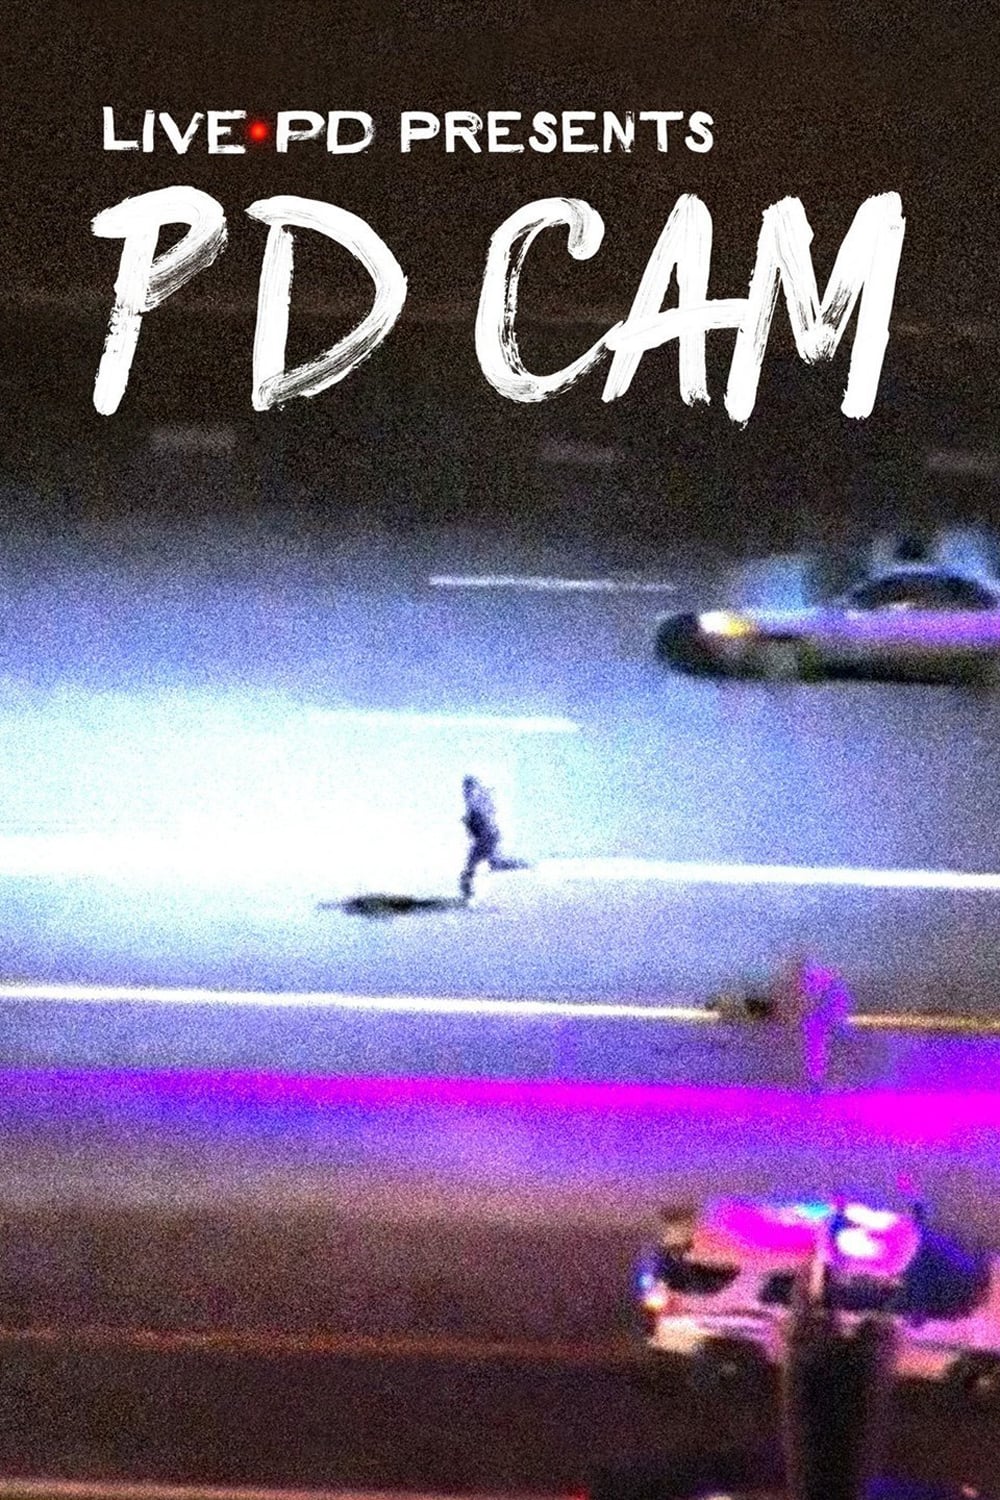 Caratula de Live PD Presents: PD Cam (Vigilancia policial) 